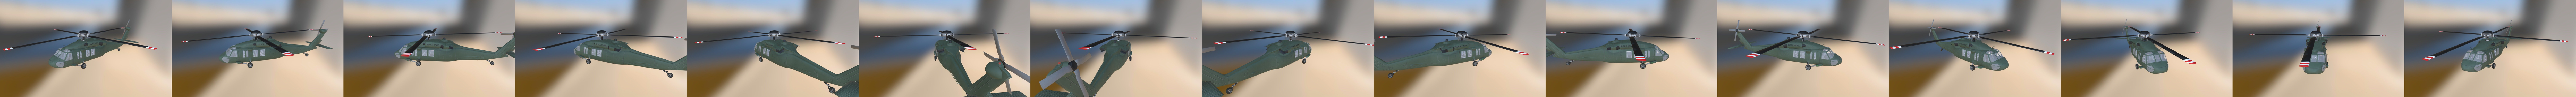 Sikorsky Uh 60 Black Hawk Download Free 3d Model By Helijah Helijah Ee81eb6 Sketchfab